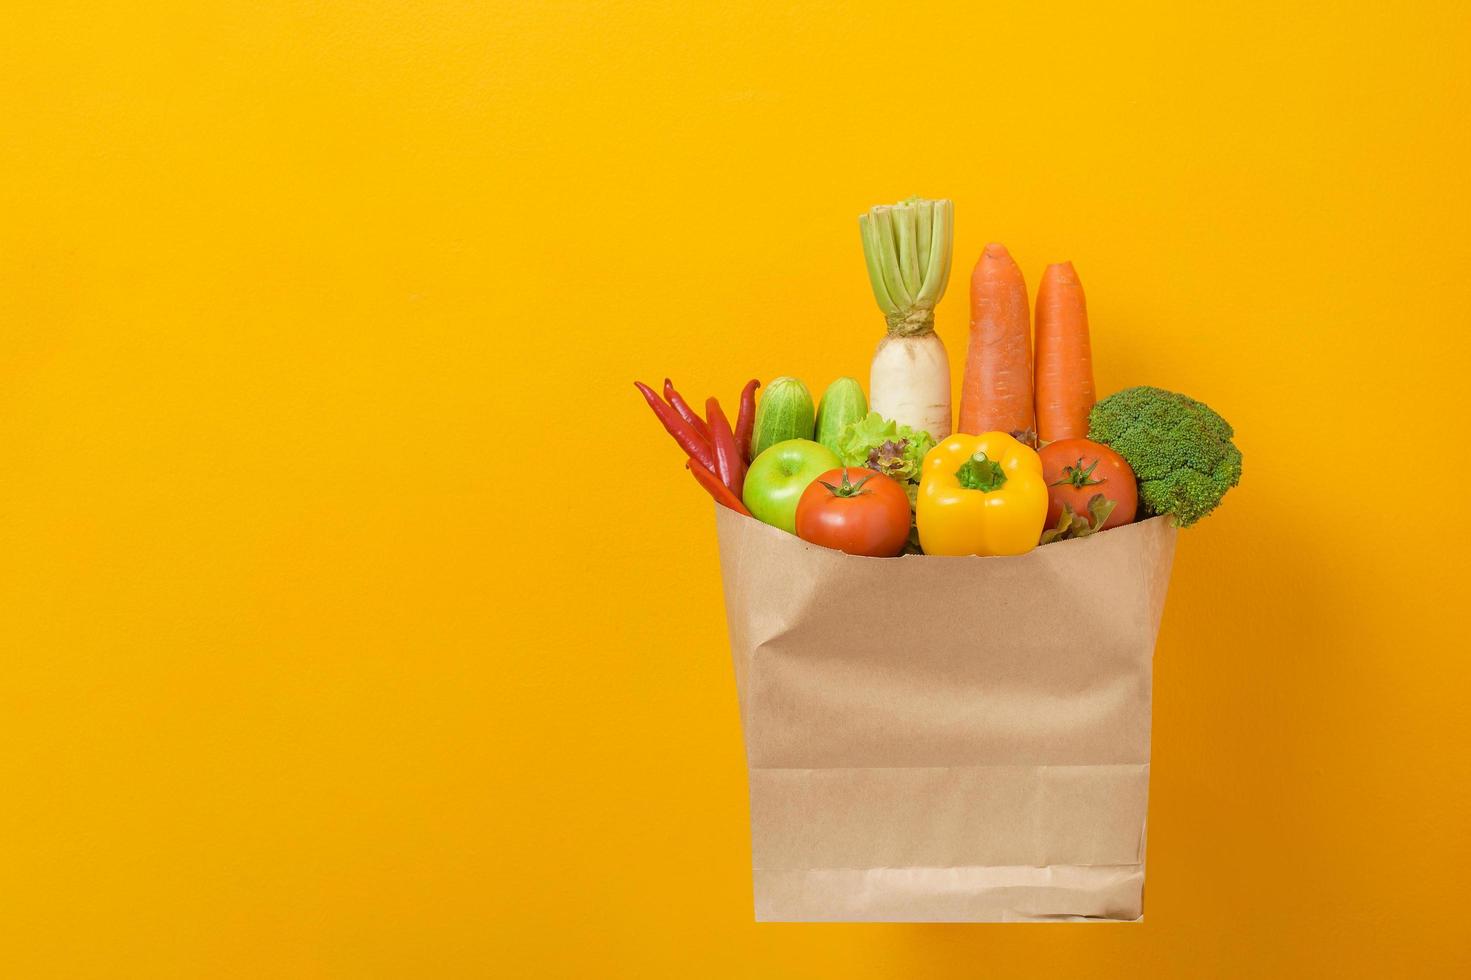 légumes dans un sac d'épicerie sur fond jaune photo